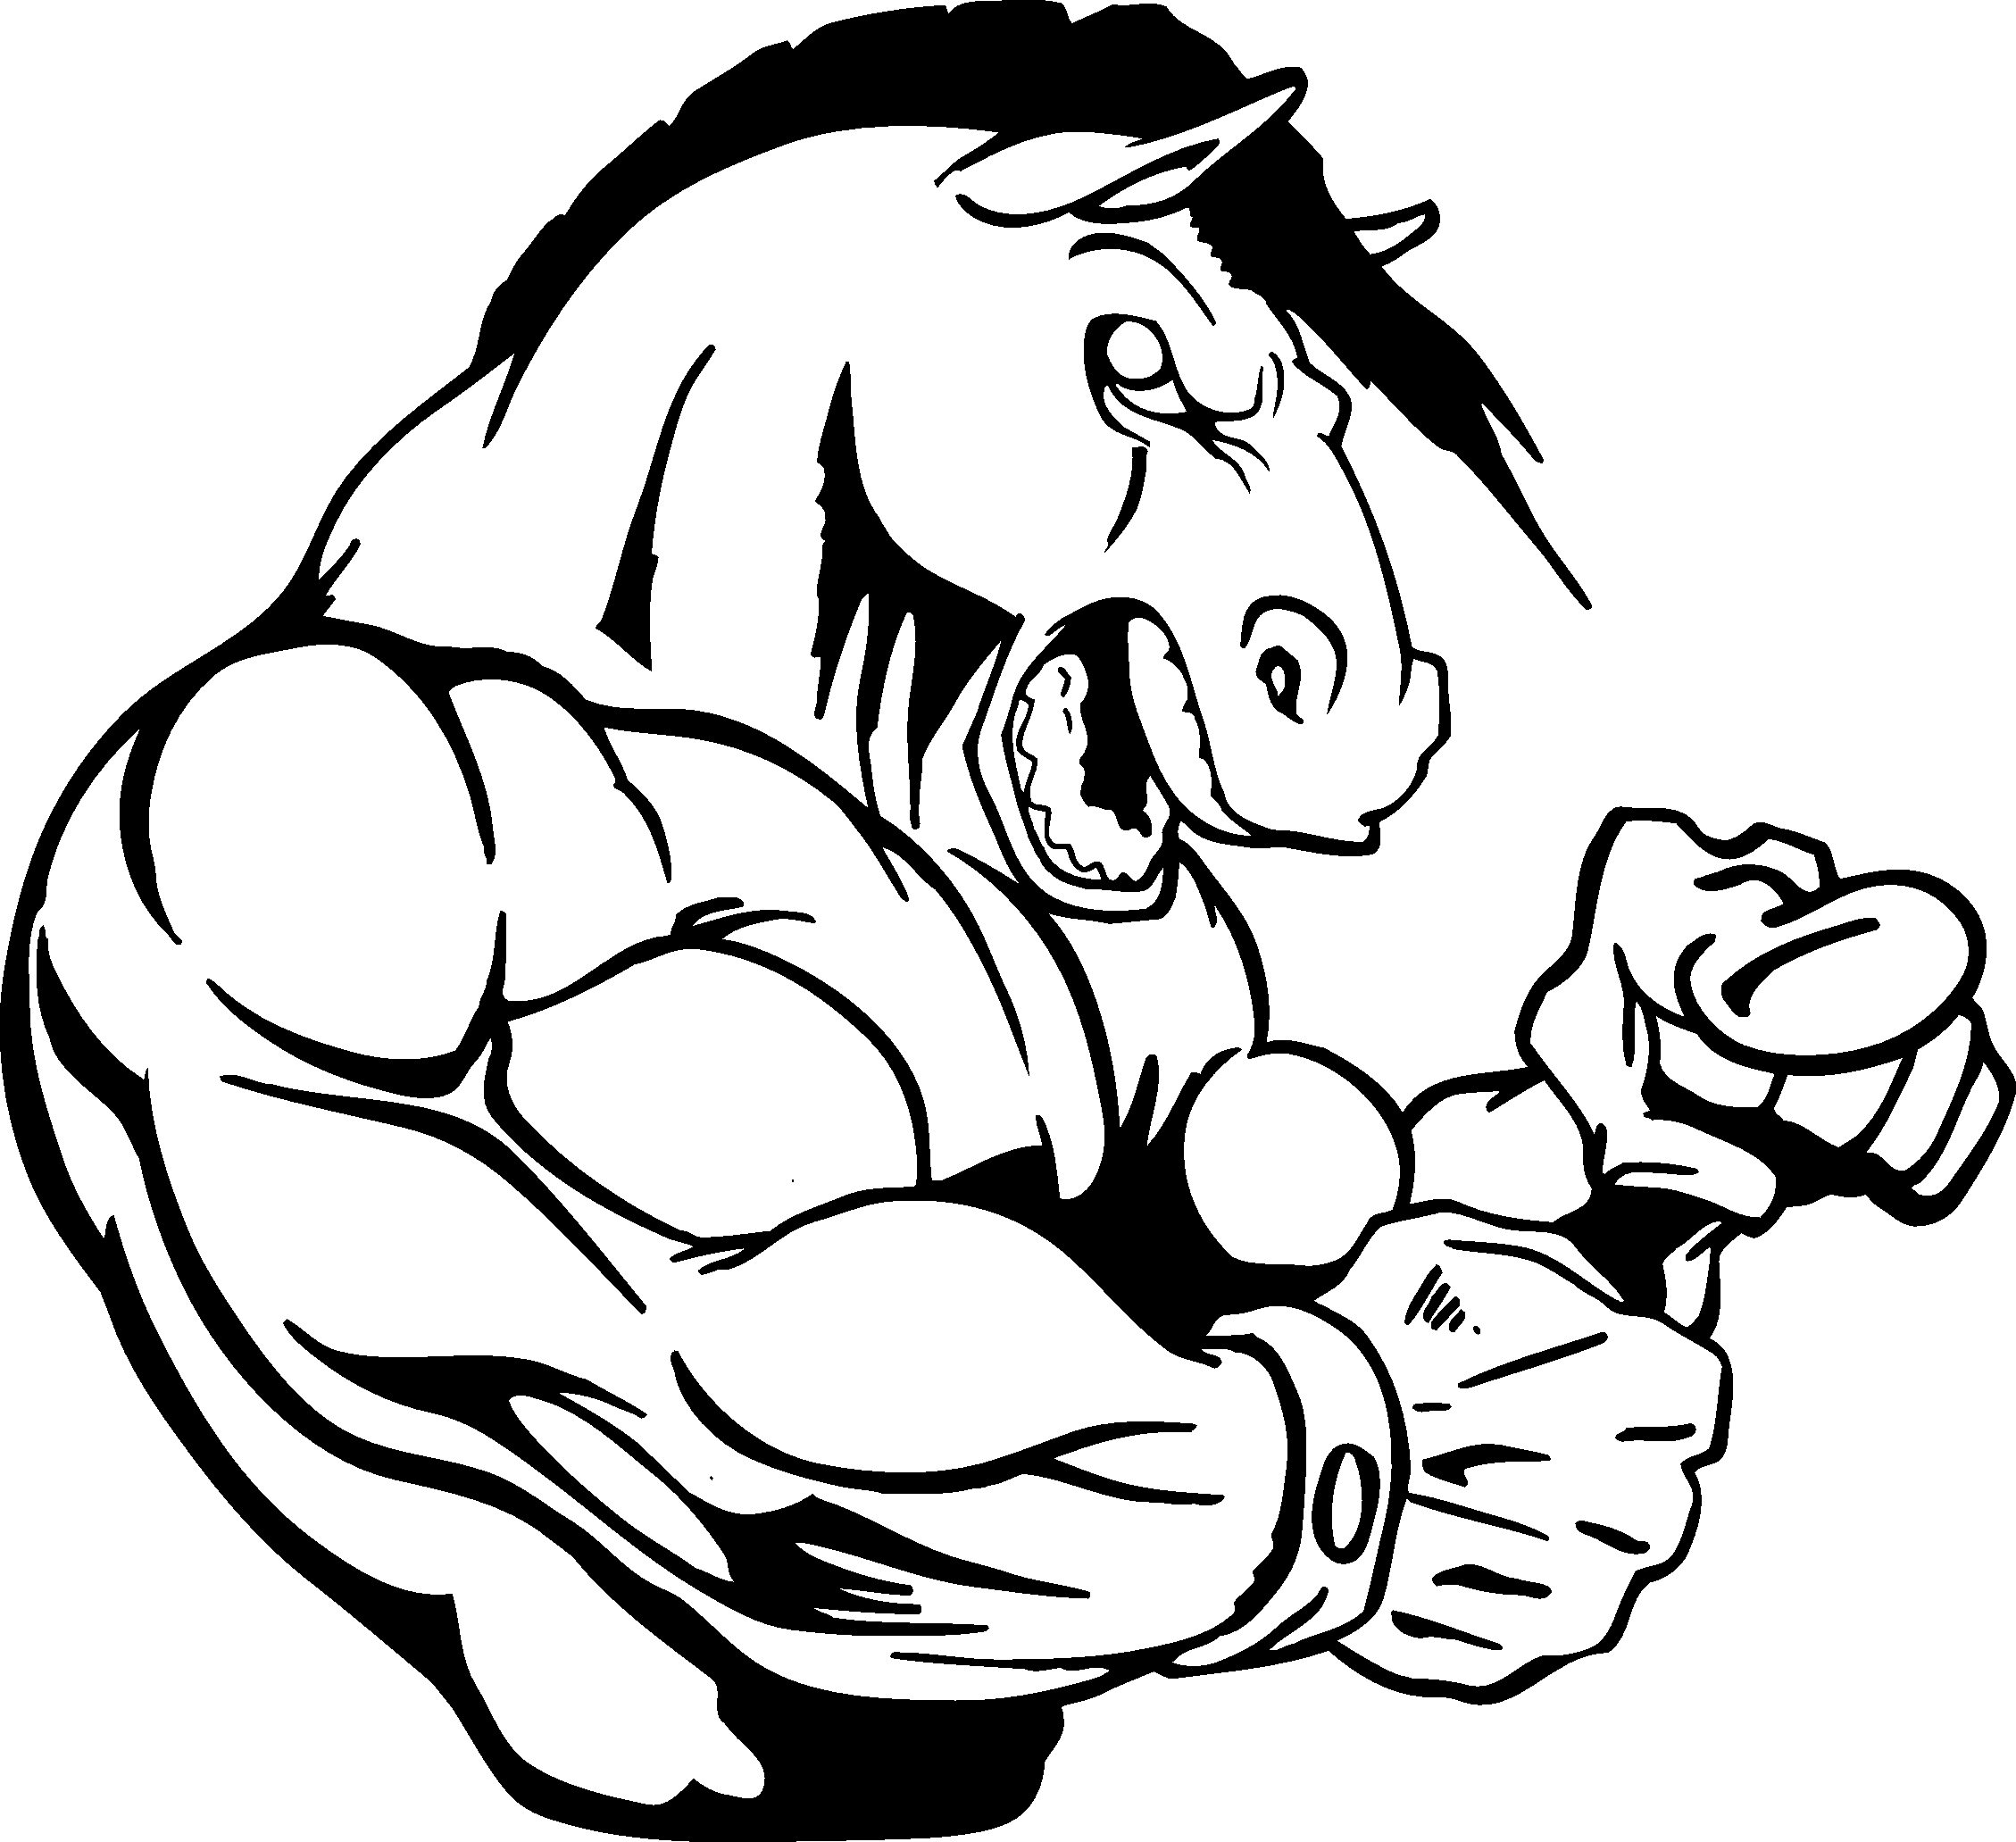 Horse mascot clipart.